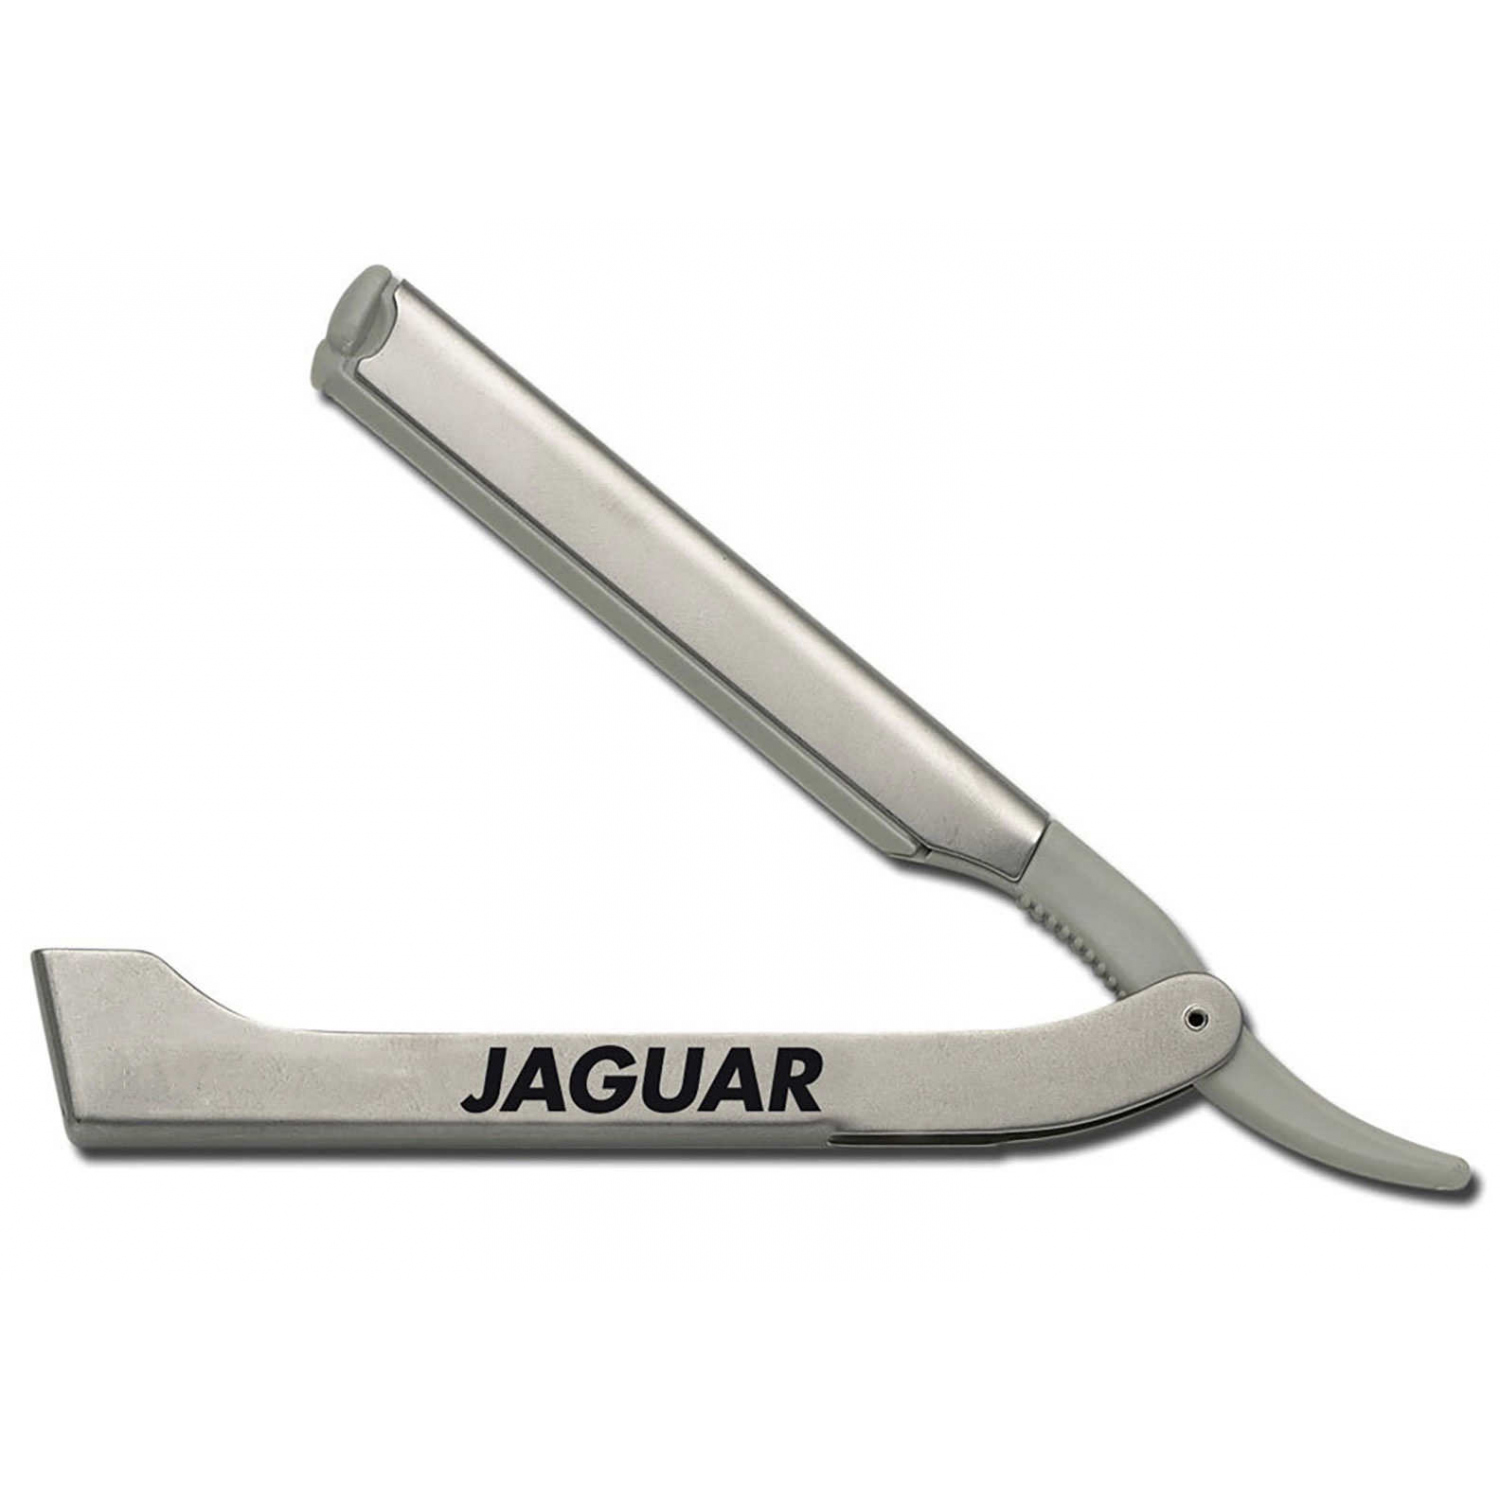 Jaguar j2 result